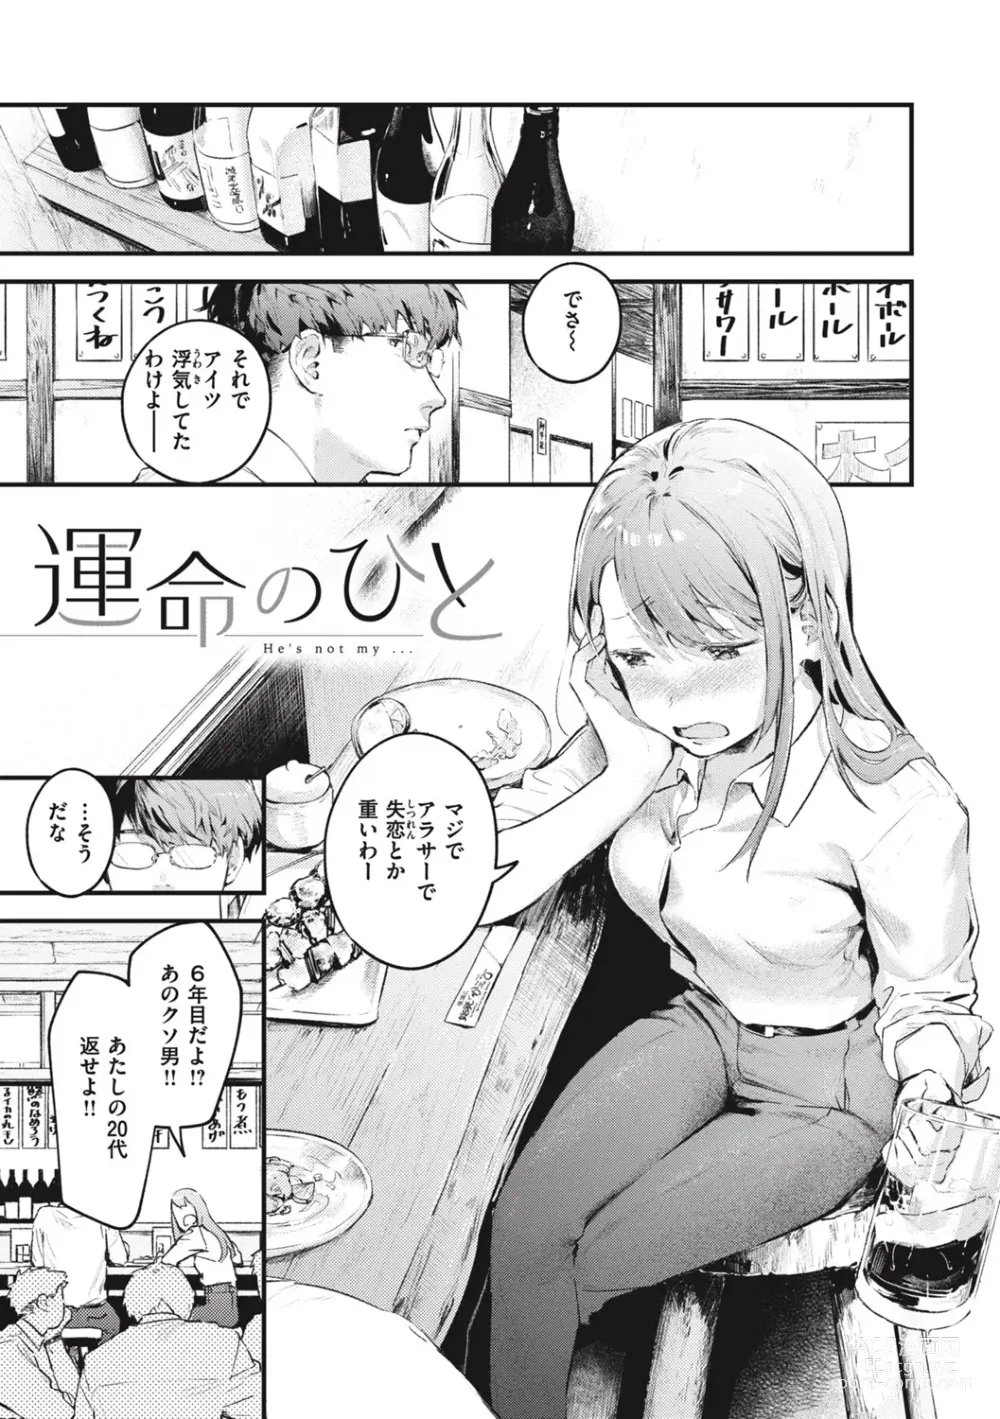 Page 183 of manga Koi no Mukidashi